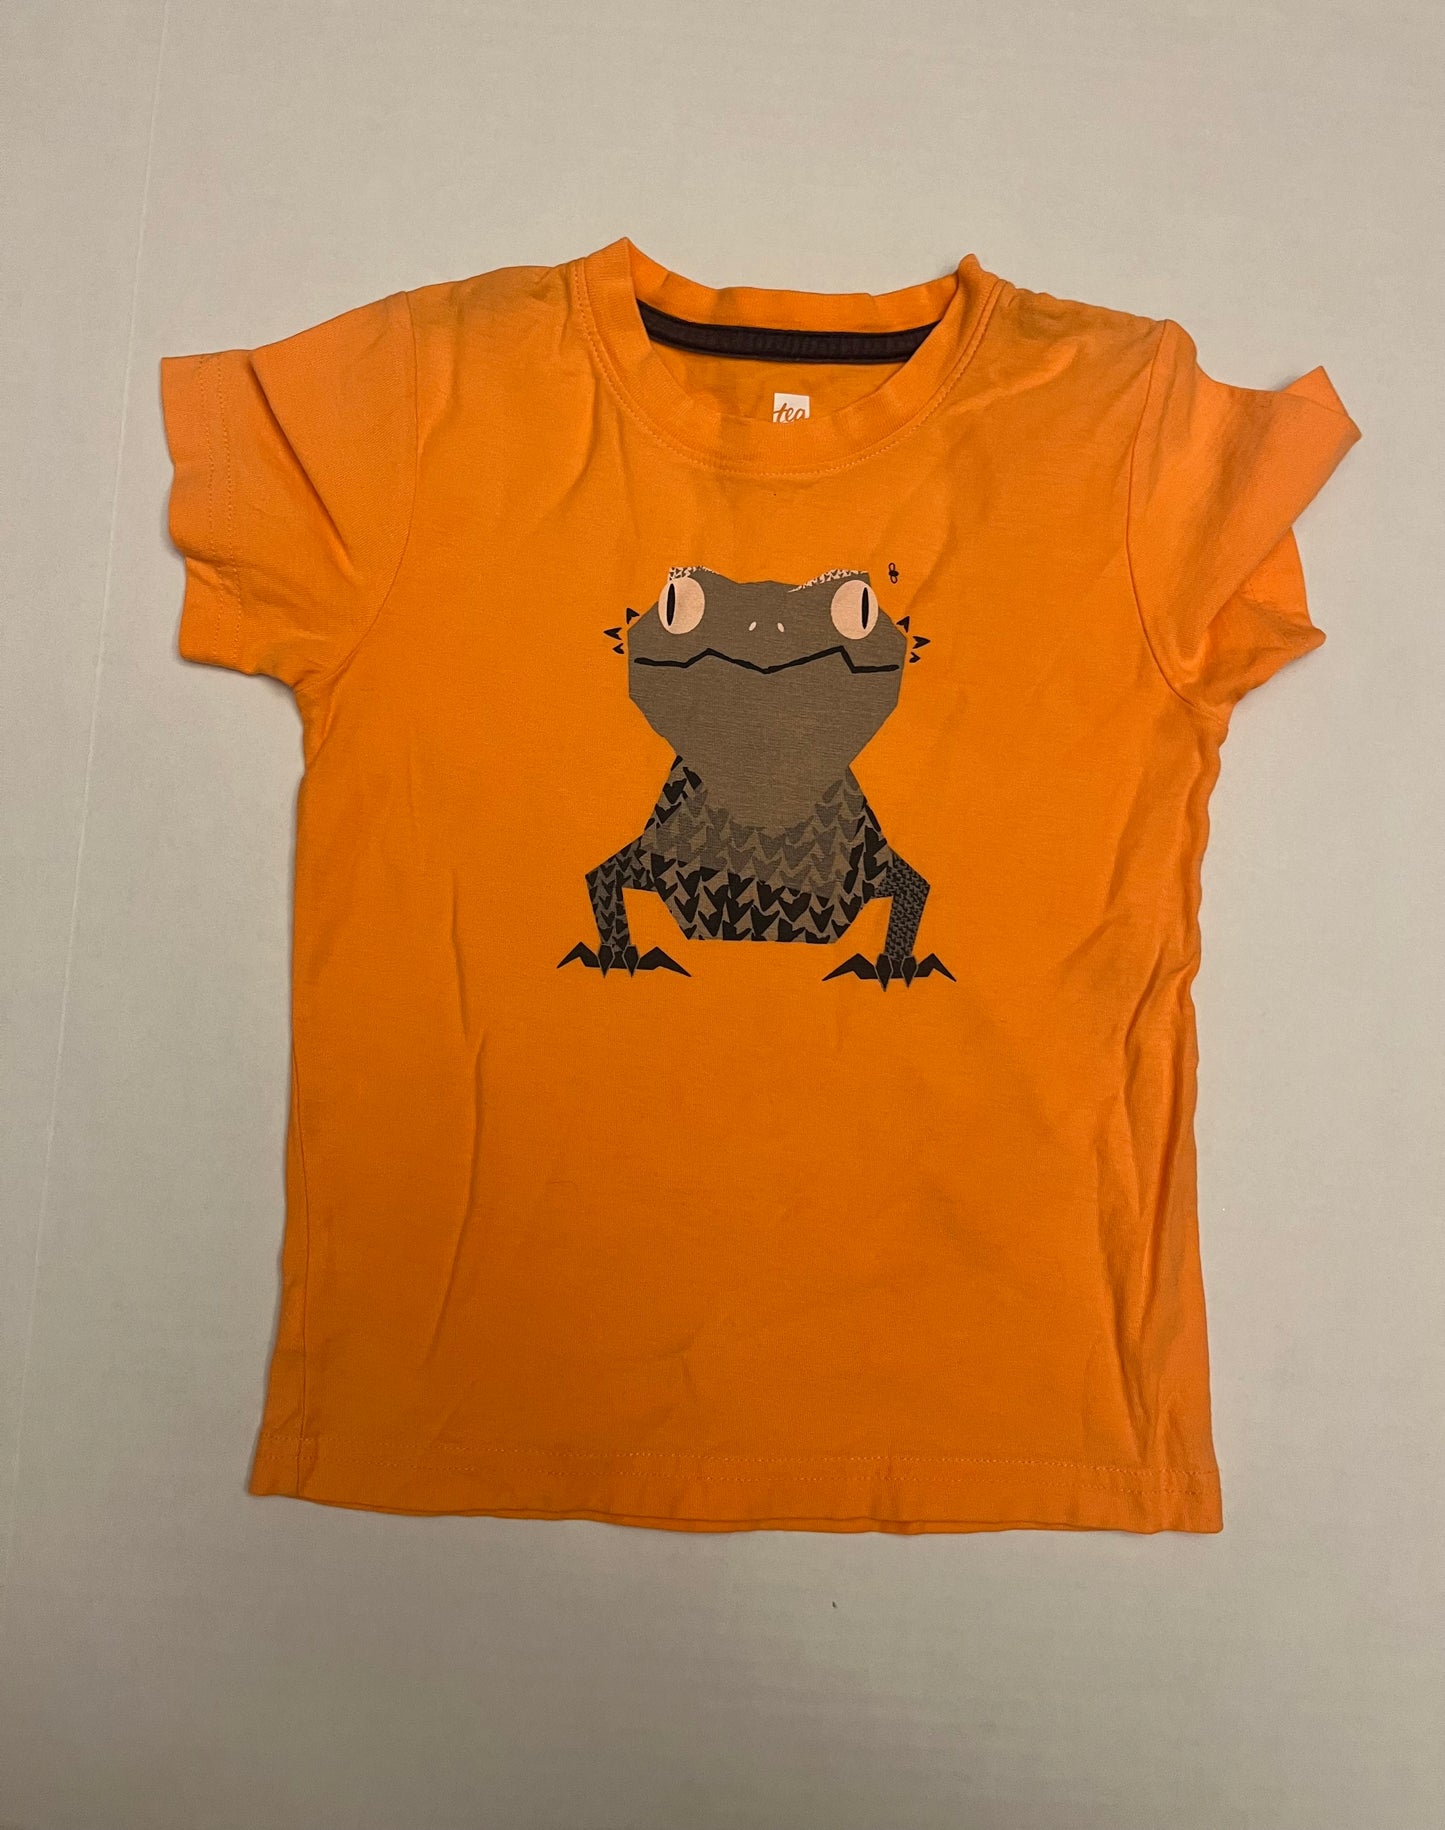 Tea Collection gecko shirt size 4T. PPU Mariemont